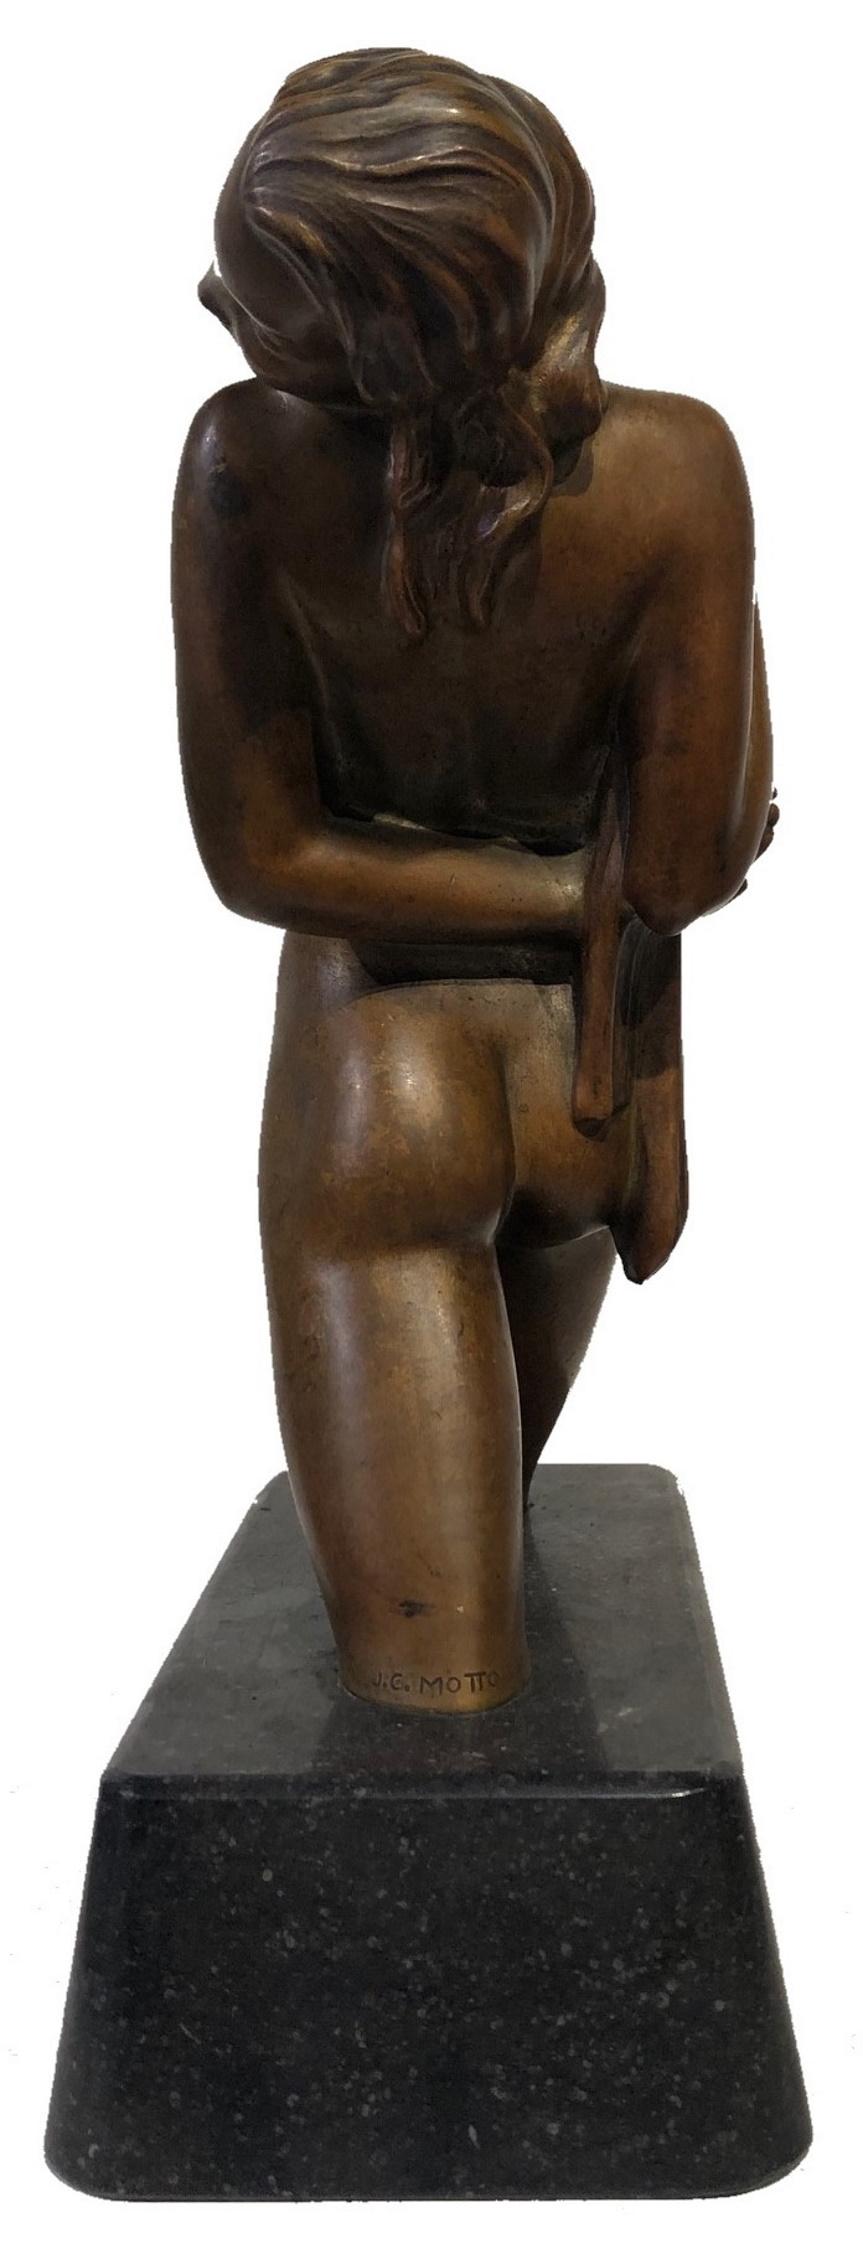 American Art Deco Female Nude Bronze Sculpture by Joseph C. Motto, ca. 1920s  For Sale 5